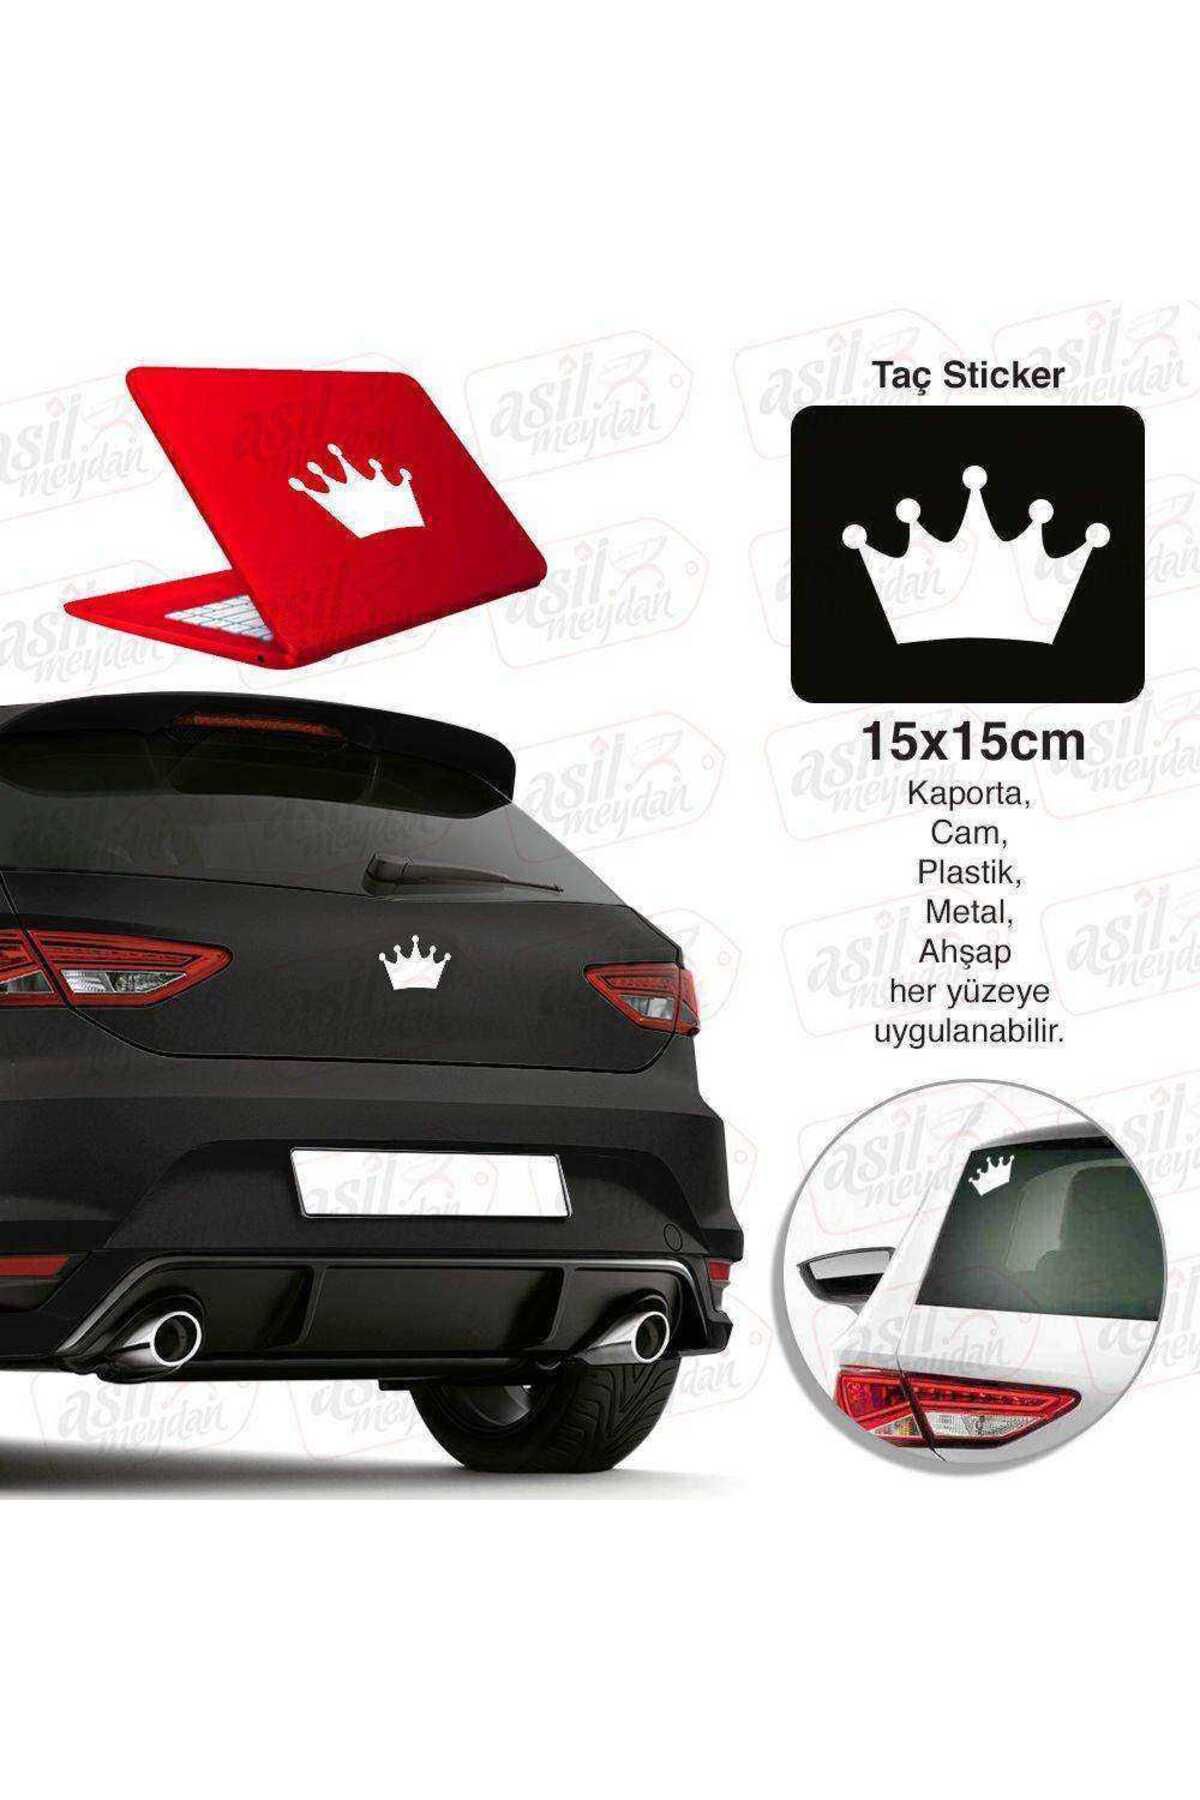 Genel Markalar Kral Tacı Taç Beyaz Sticker - Araç Oto Araba Etiket, Arma, Aksesuar, Modifiye, Tuning